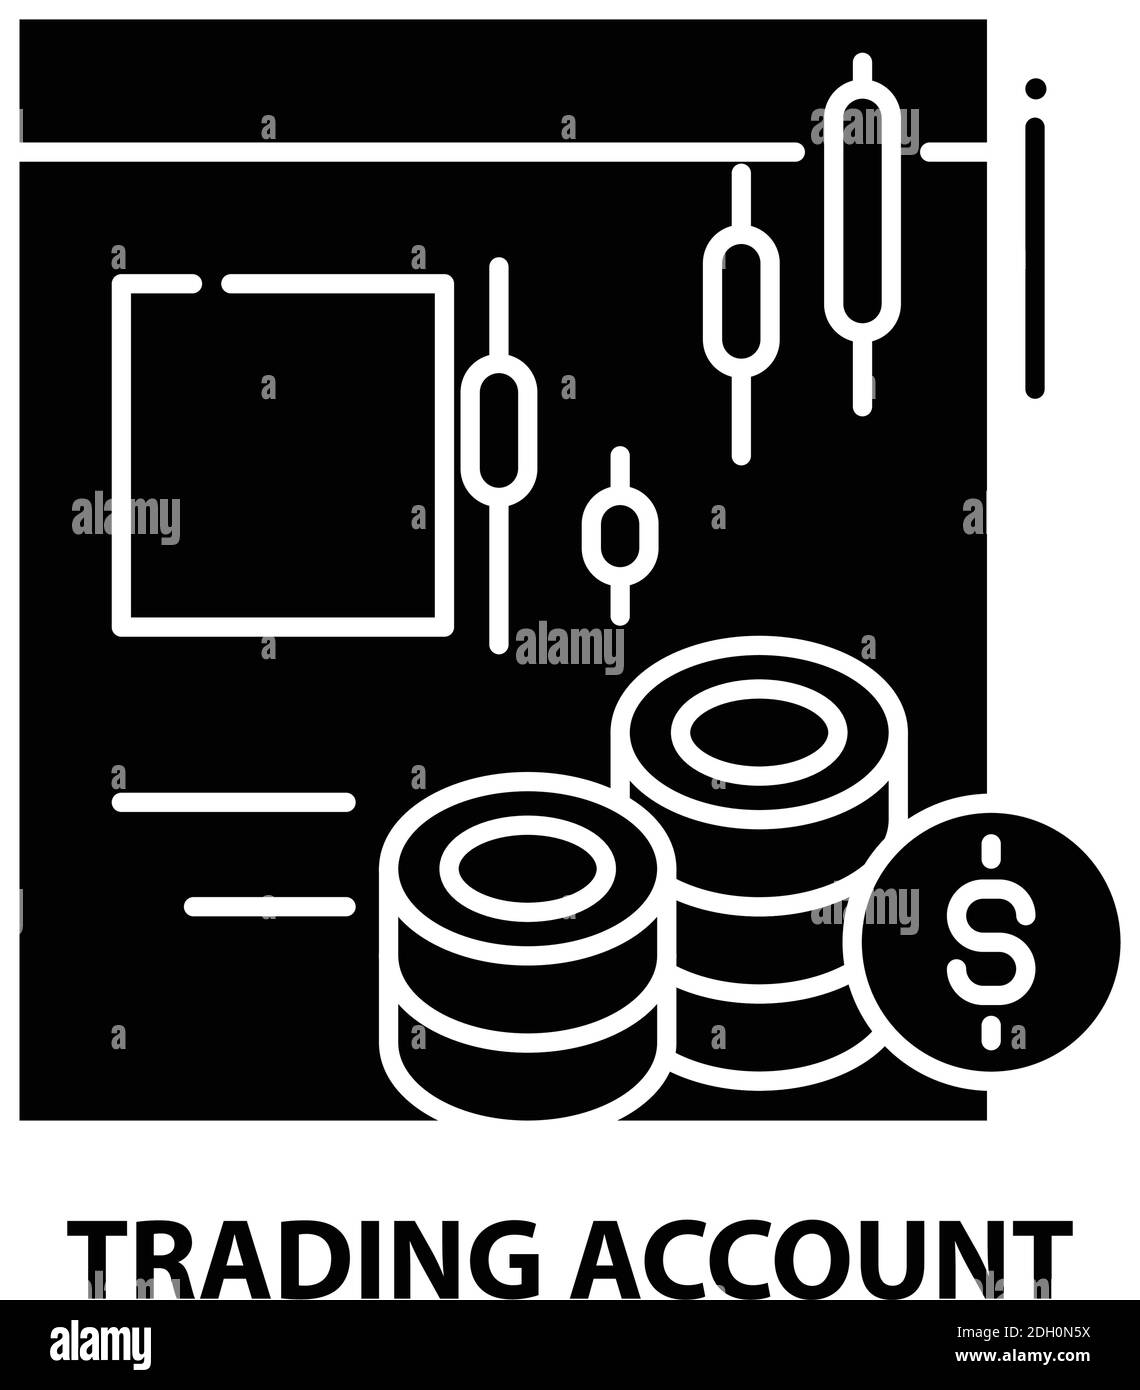 Trading Account Icon, schwarzes Vektorzeichen mit editierbaren Striche, Konzeptdarstellung Stock Vektor